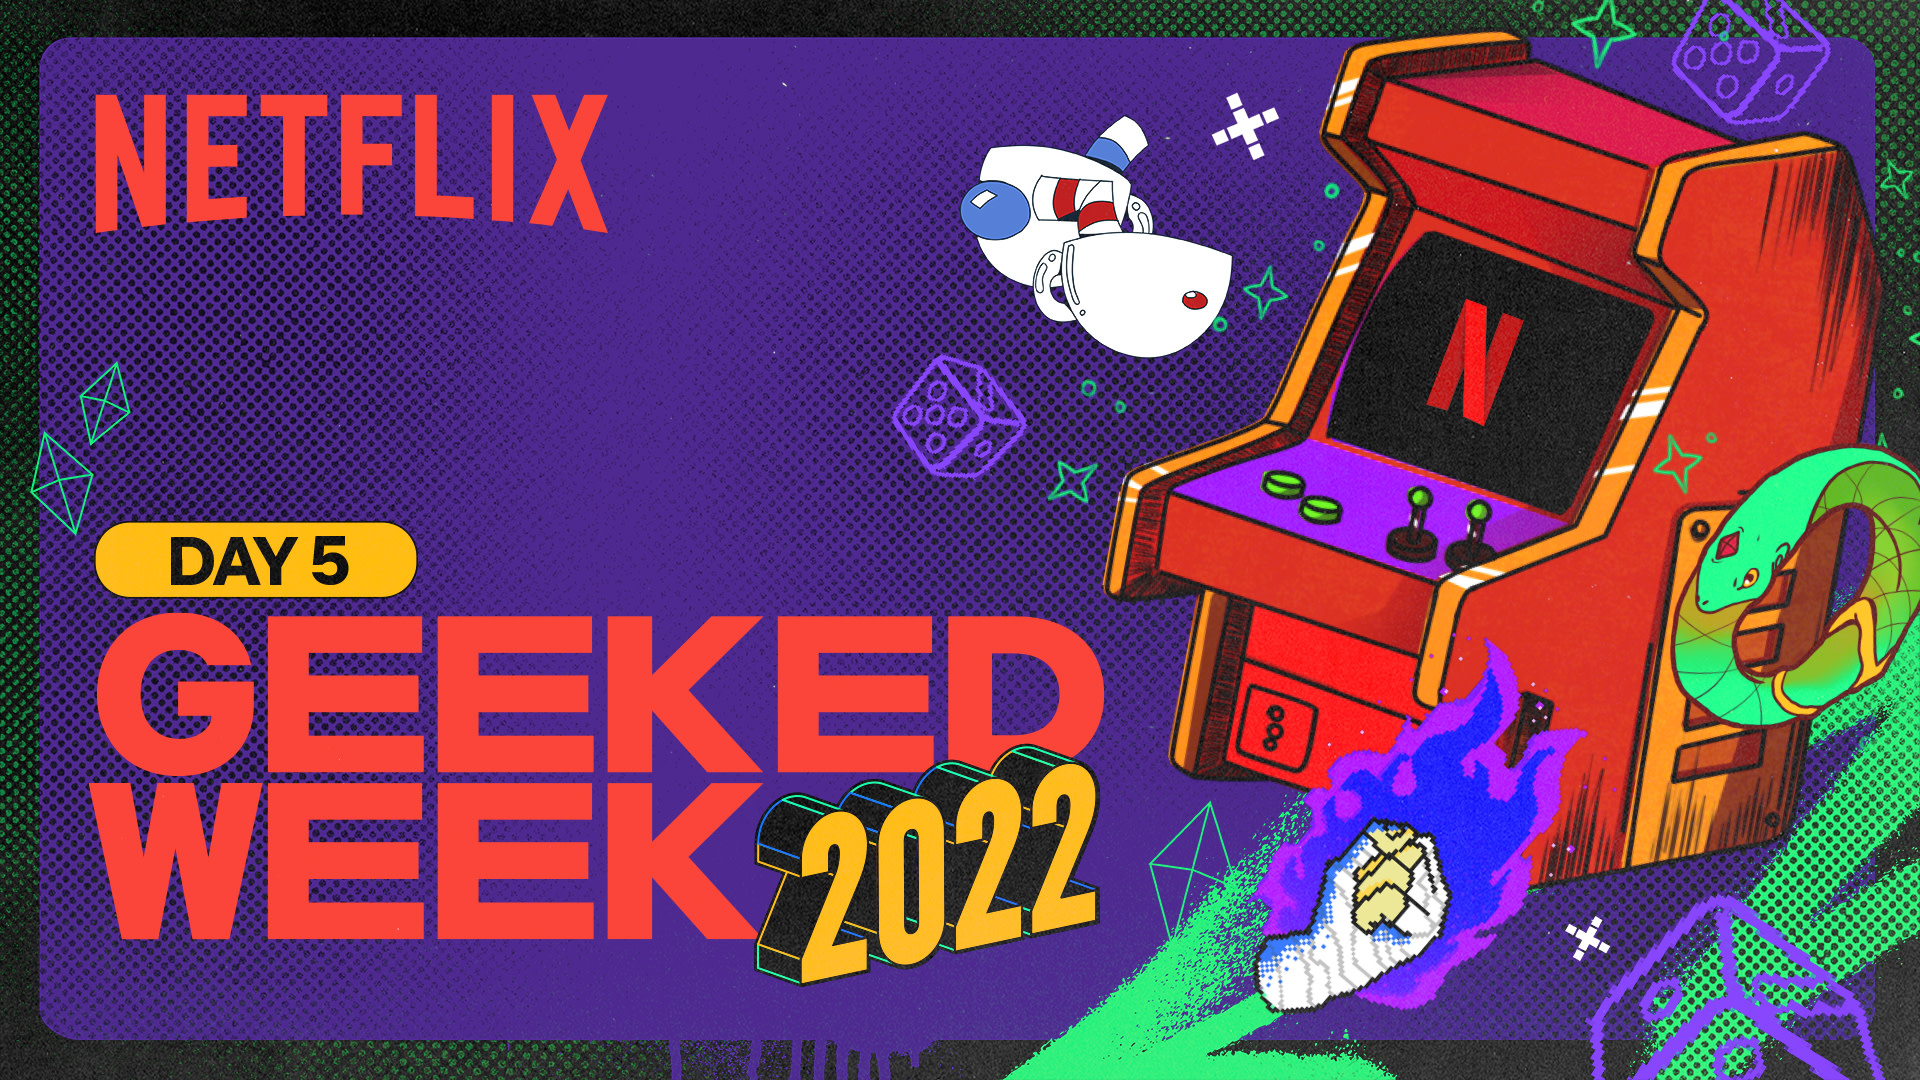 Geeked Week 2022 다시 보기: 최신 뉴스부터 미리보기 영상까지 총정리 - 게임 데이